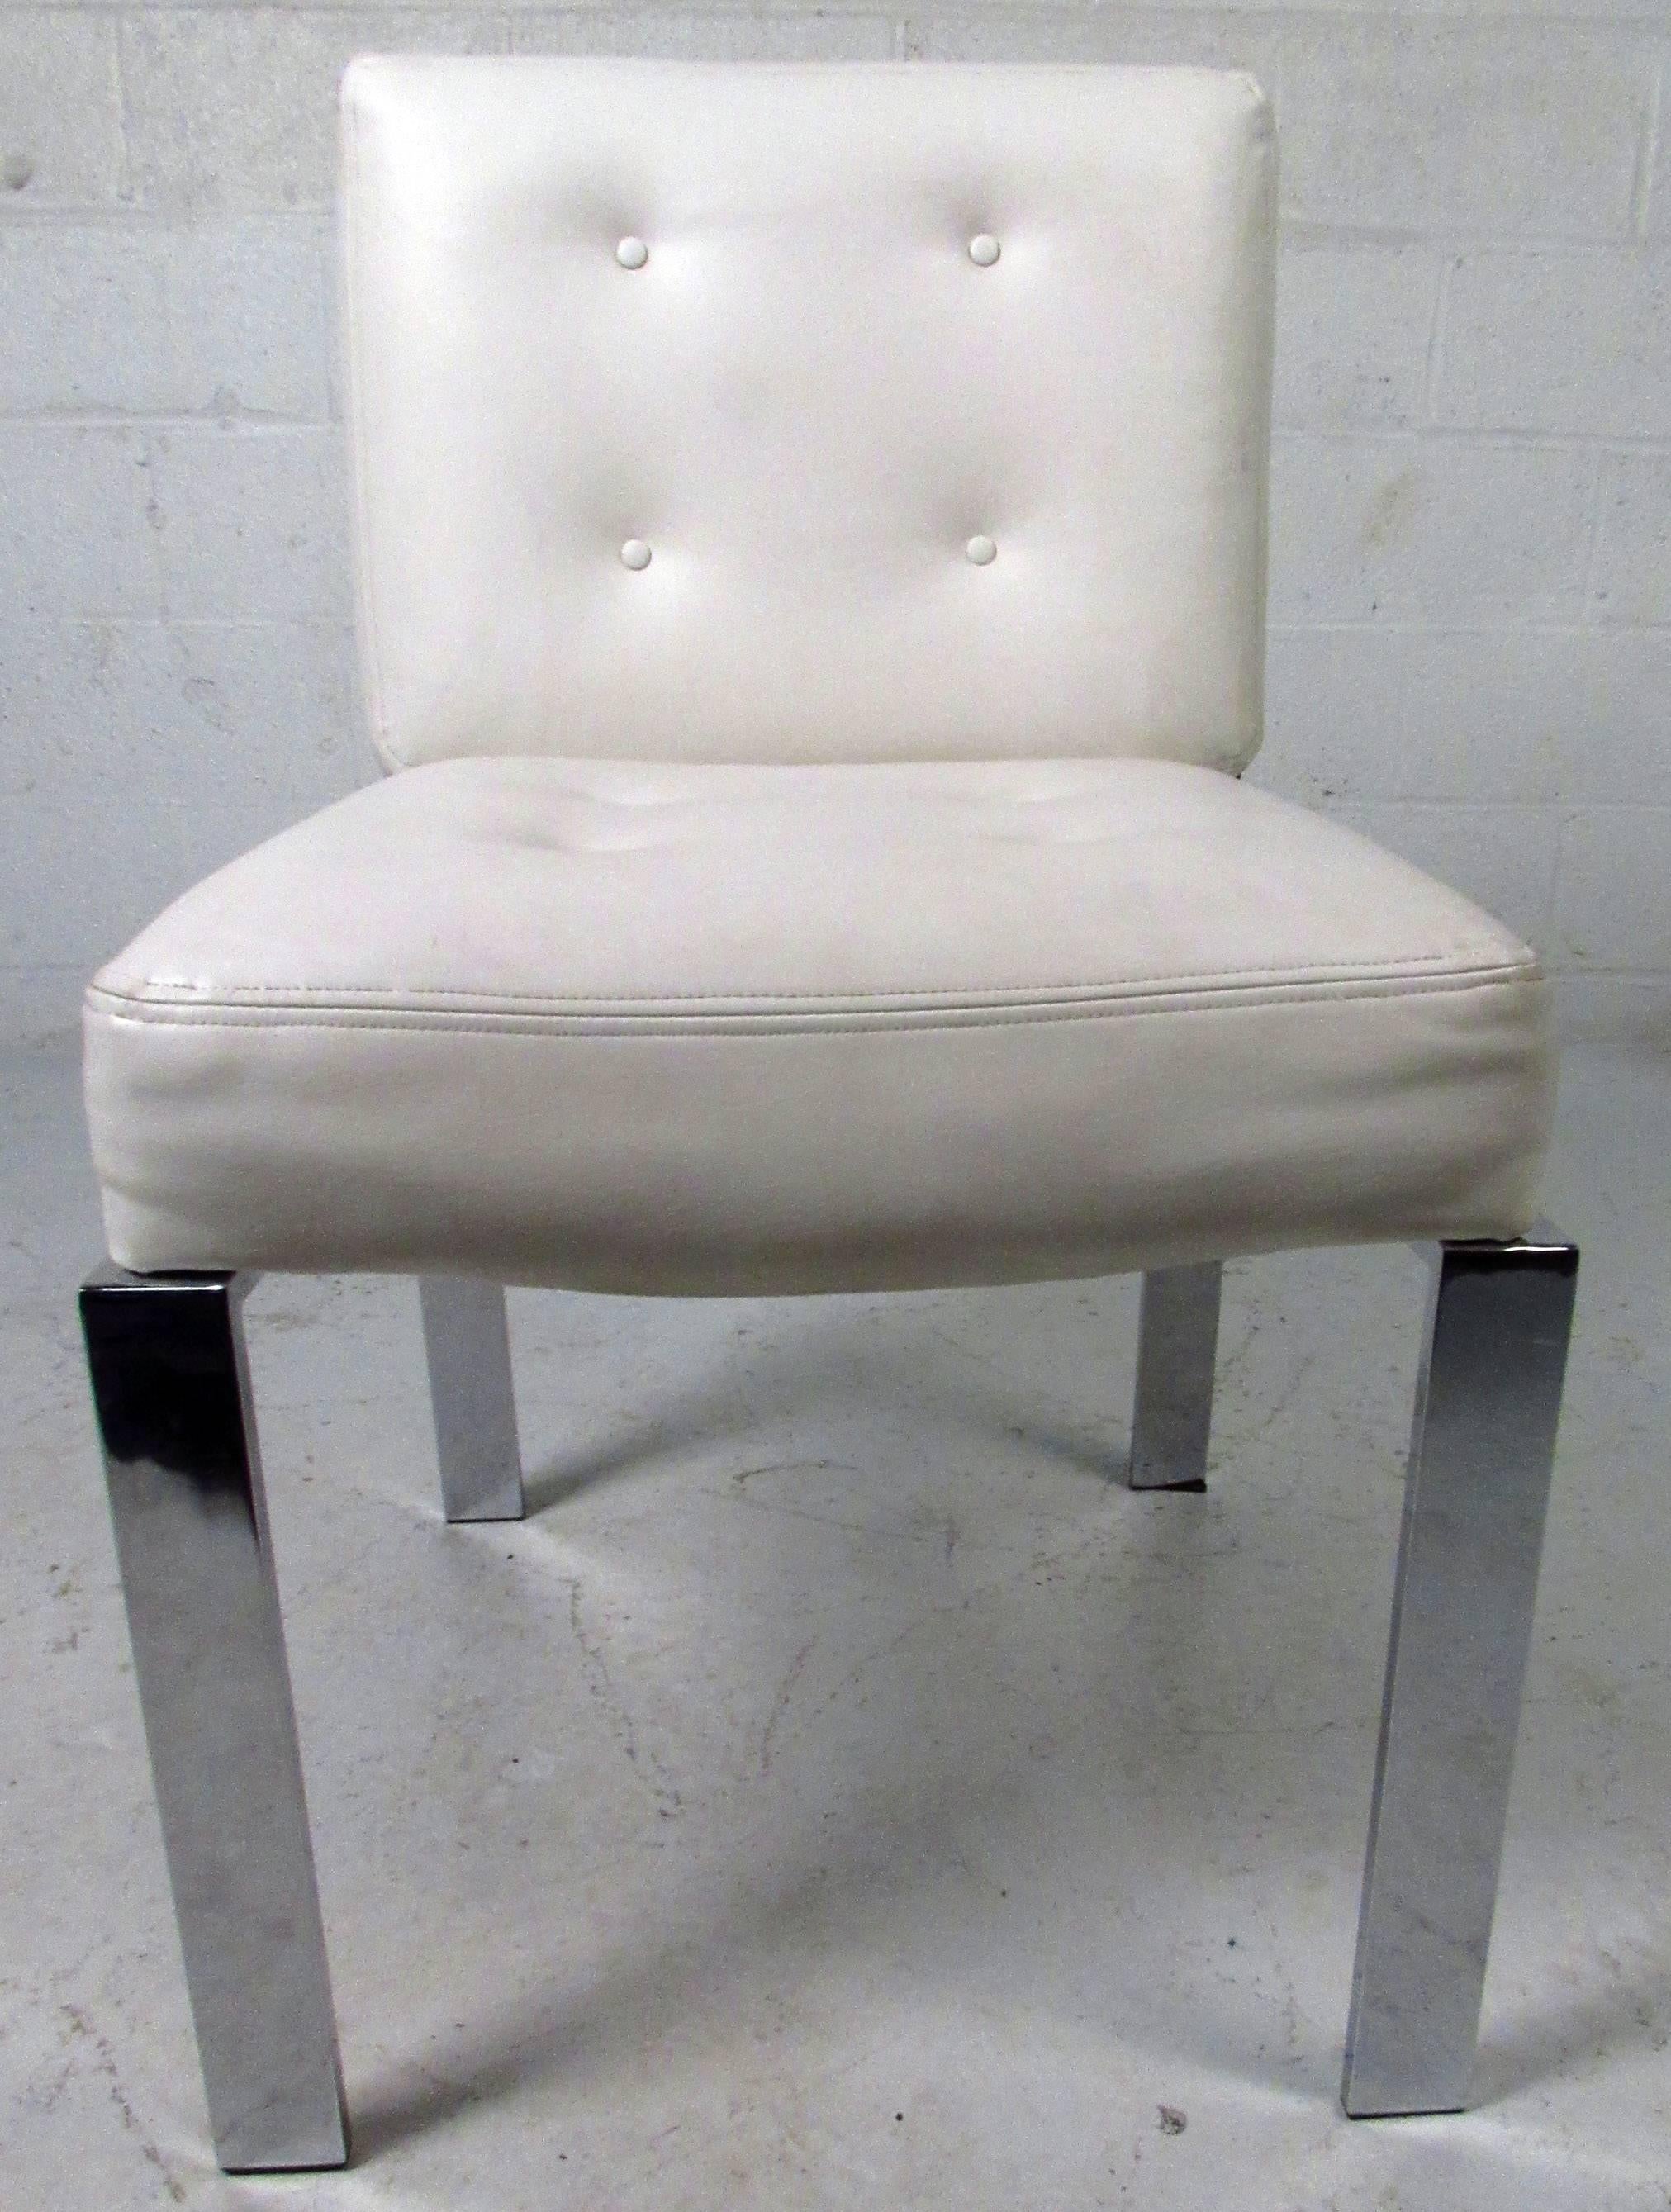 Vintage-moderne Esszimmerstühle von Milo Baughman mit getufteten weißen Vinylpolstern und verchromten Gestellen und Beinen.

Bitte bestätigen Sie Artikel Standort NY oder NJ mit Händler.